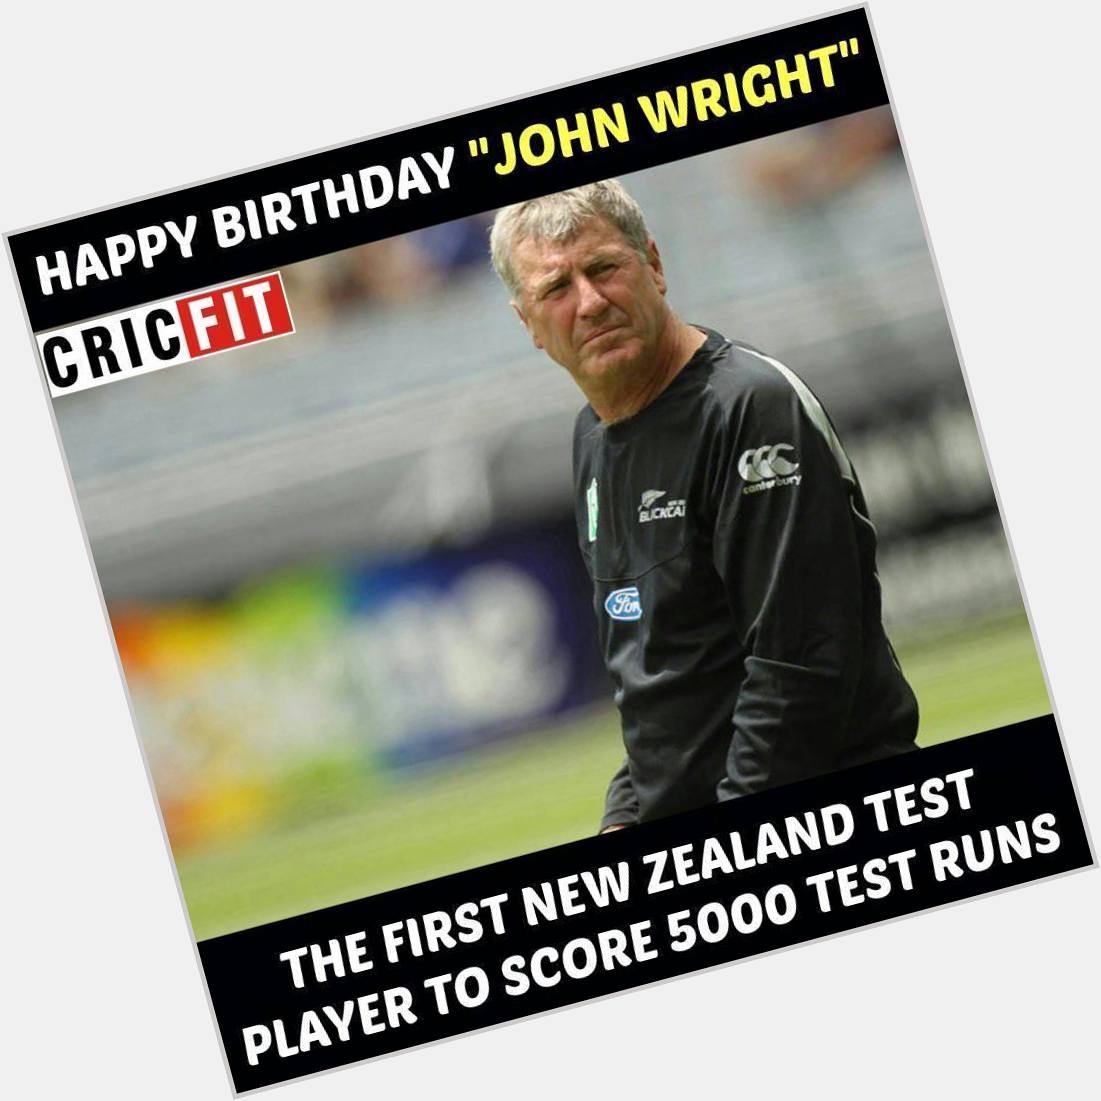 Happy birthday John Wright! 